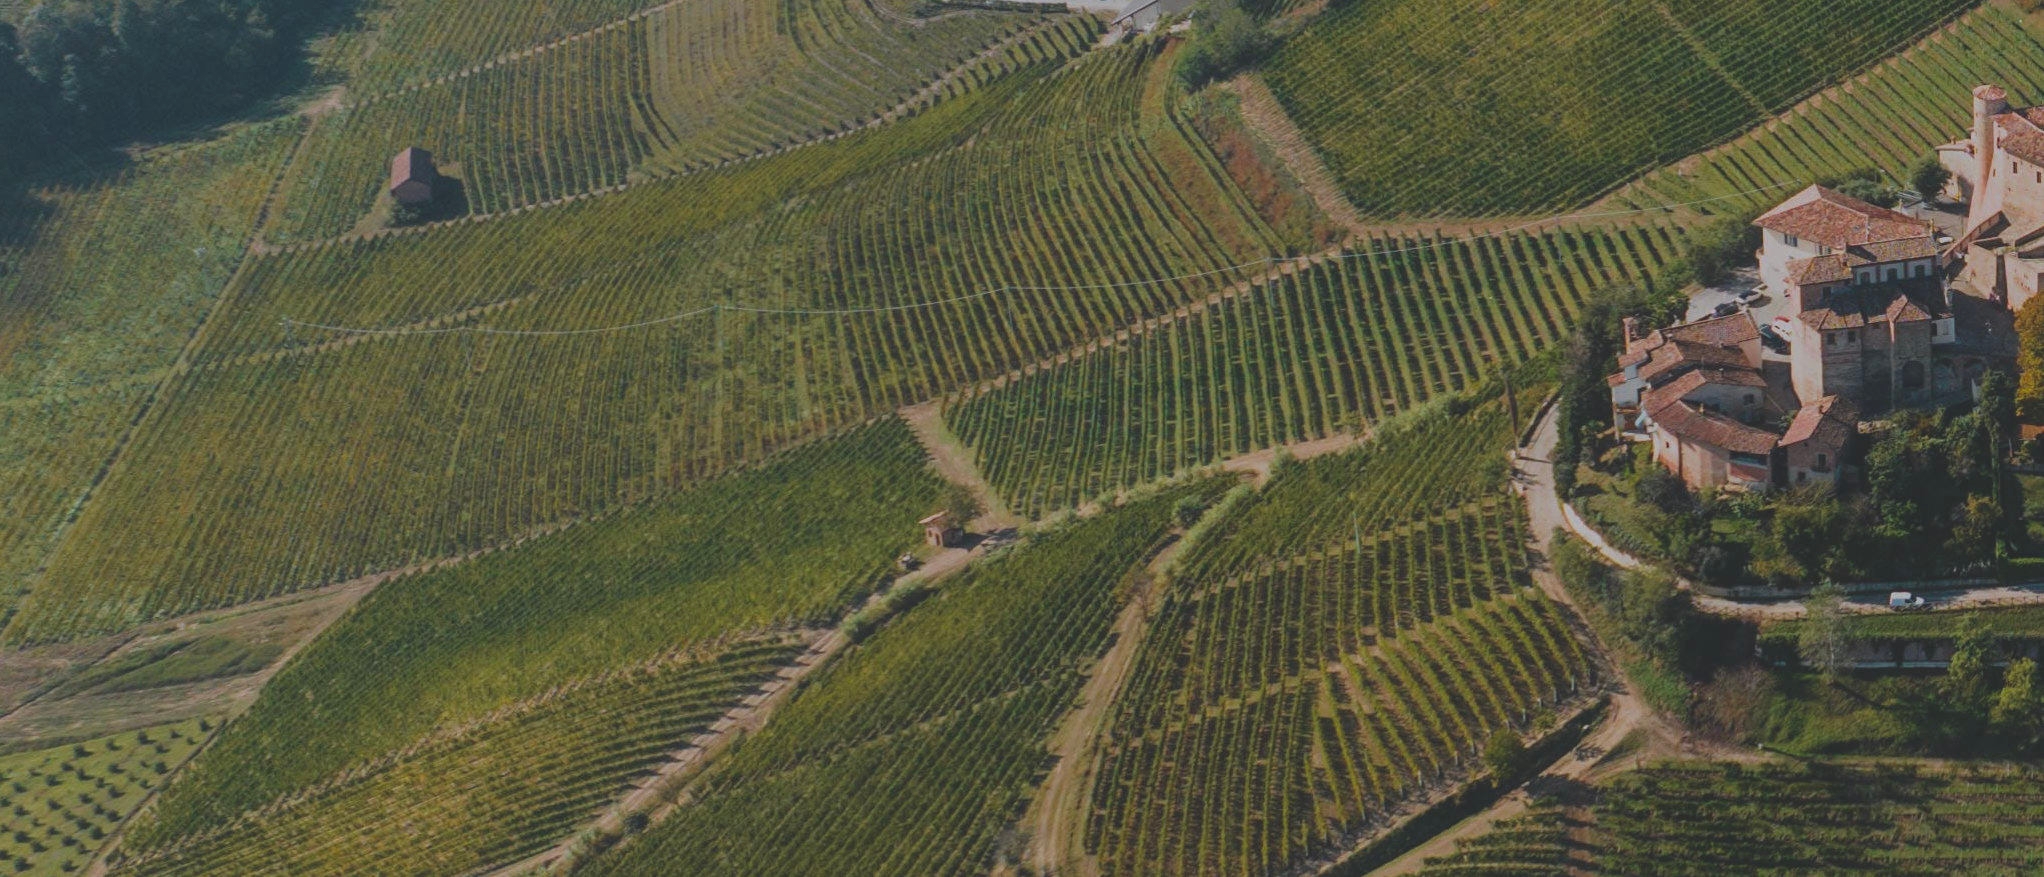 Vineyard in piedmont, Italy